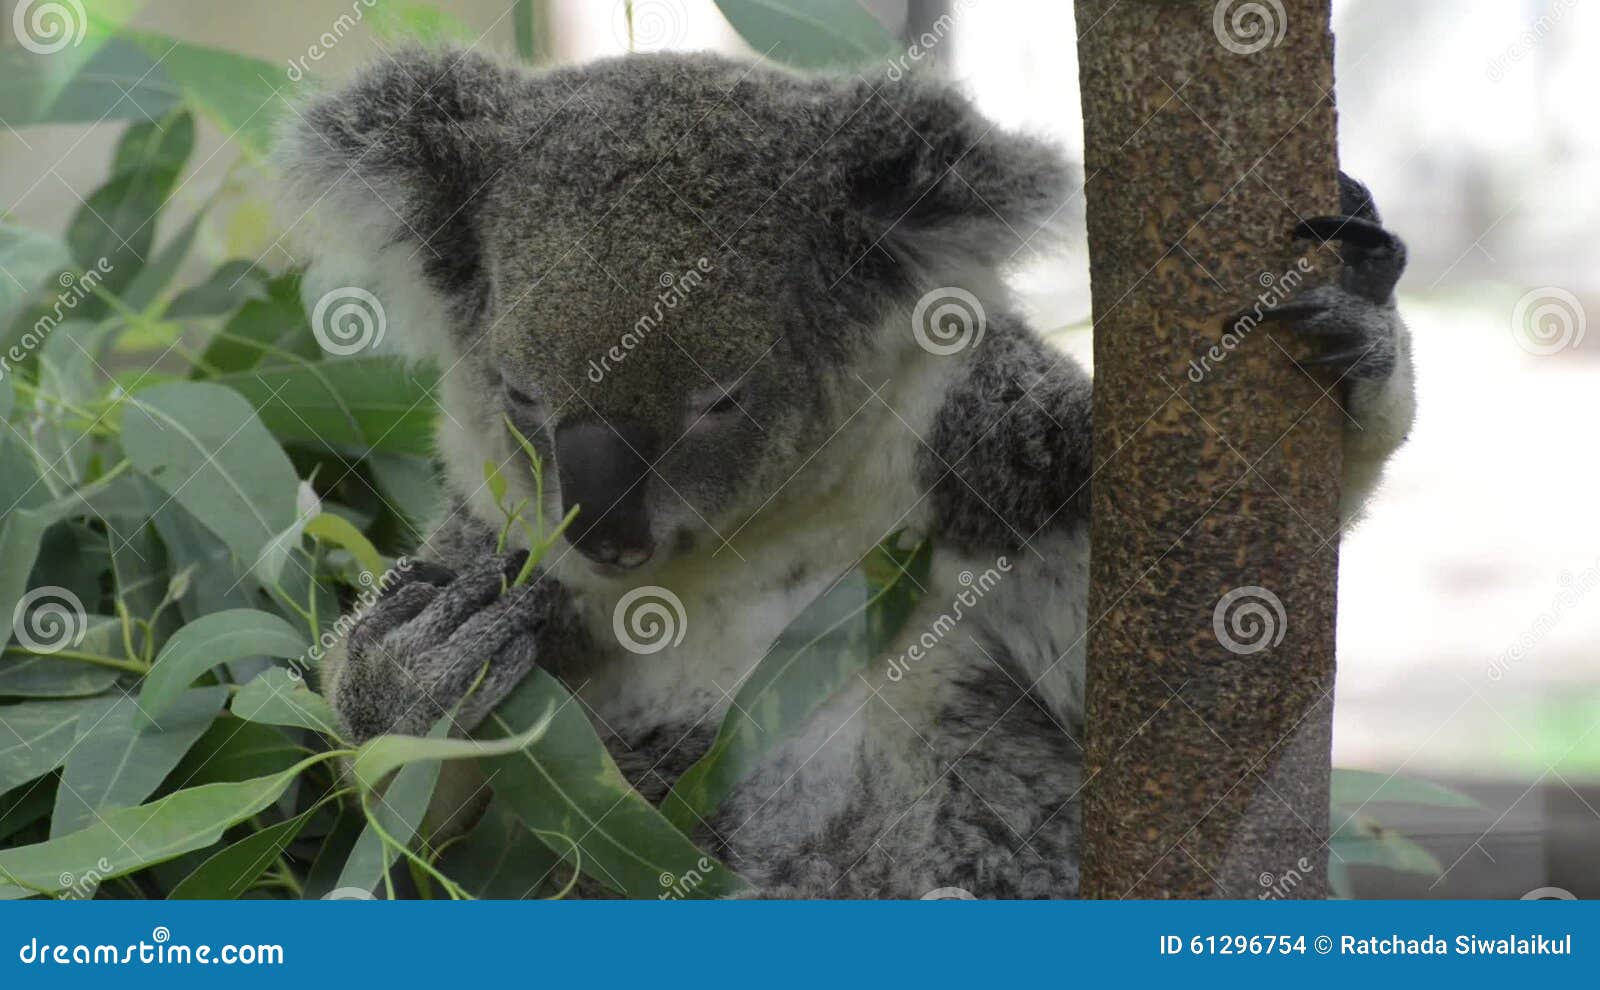 Koala Câlin Mignon Banque D'Images et Photos Libres De Droits